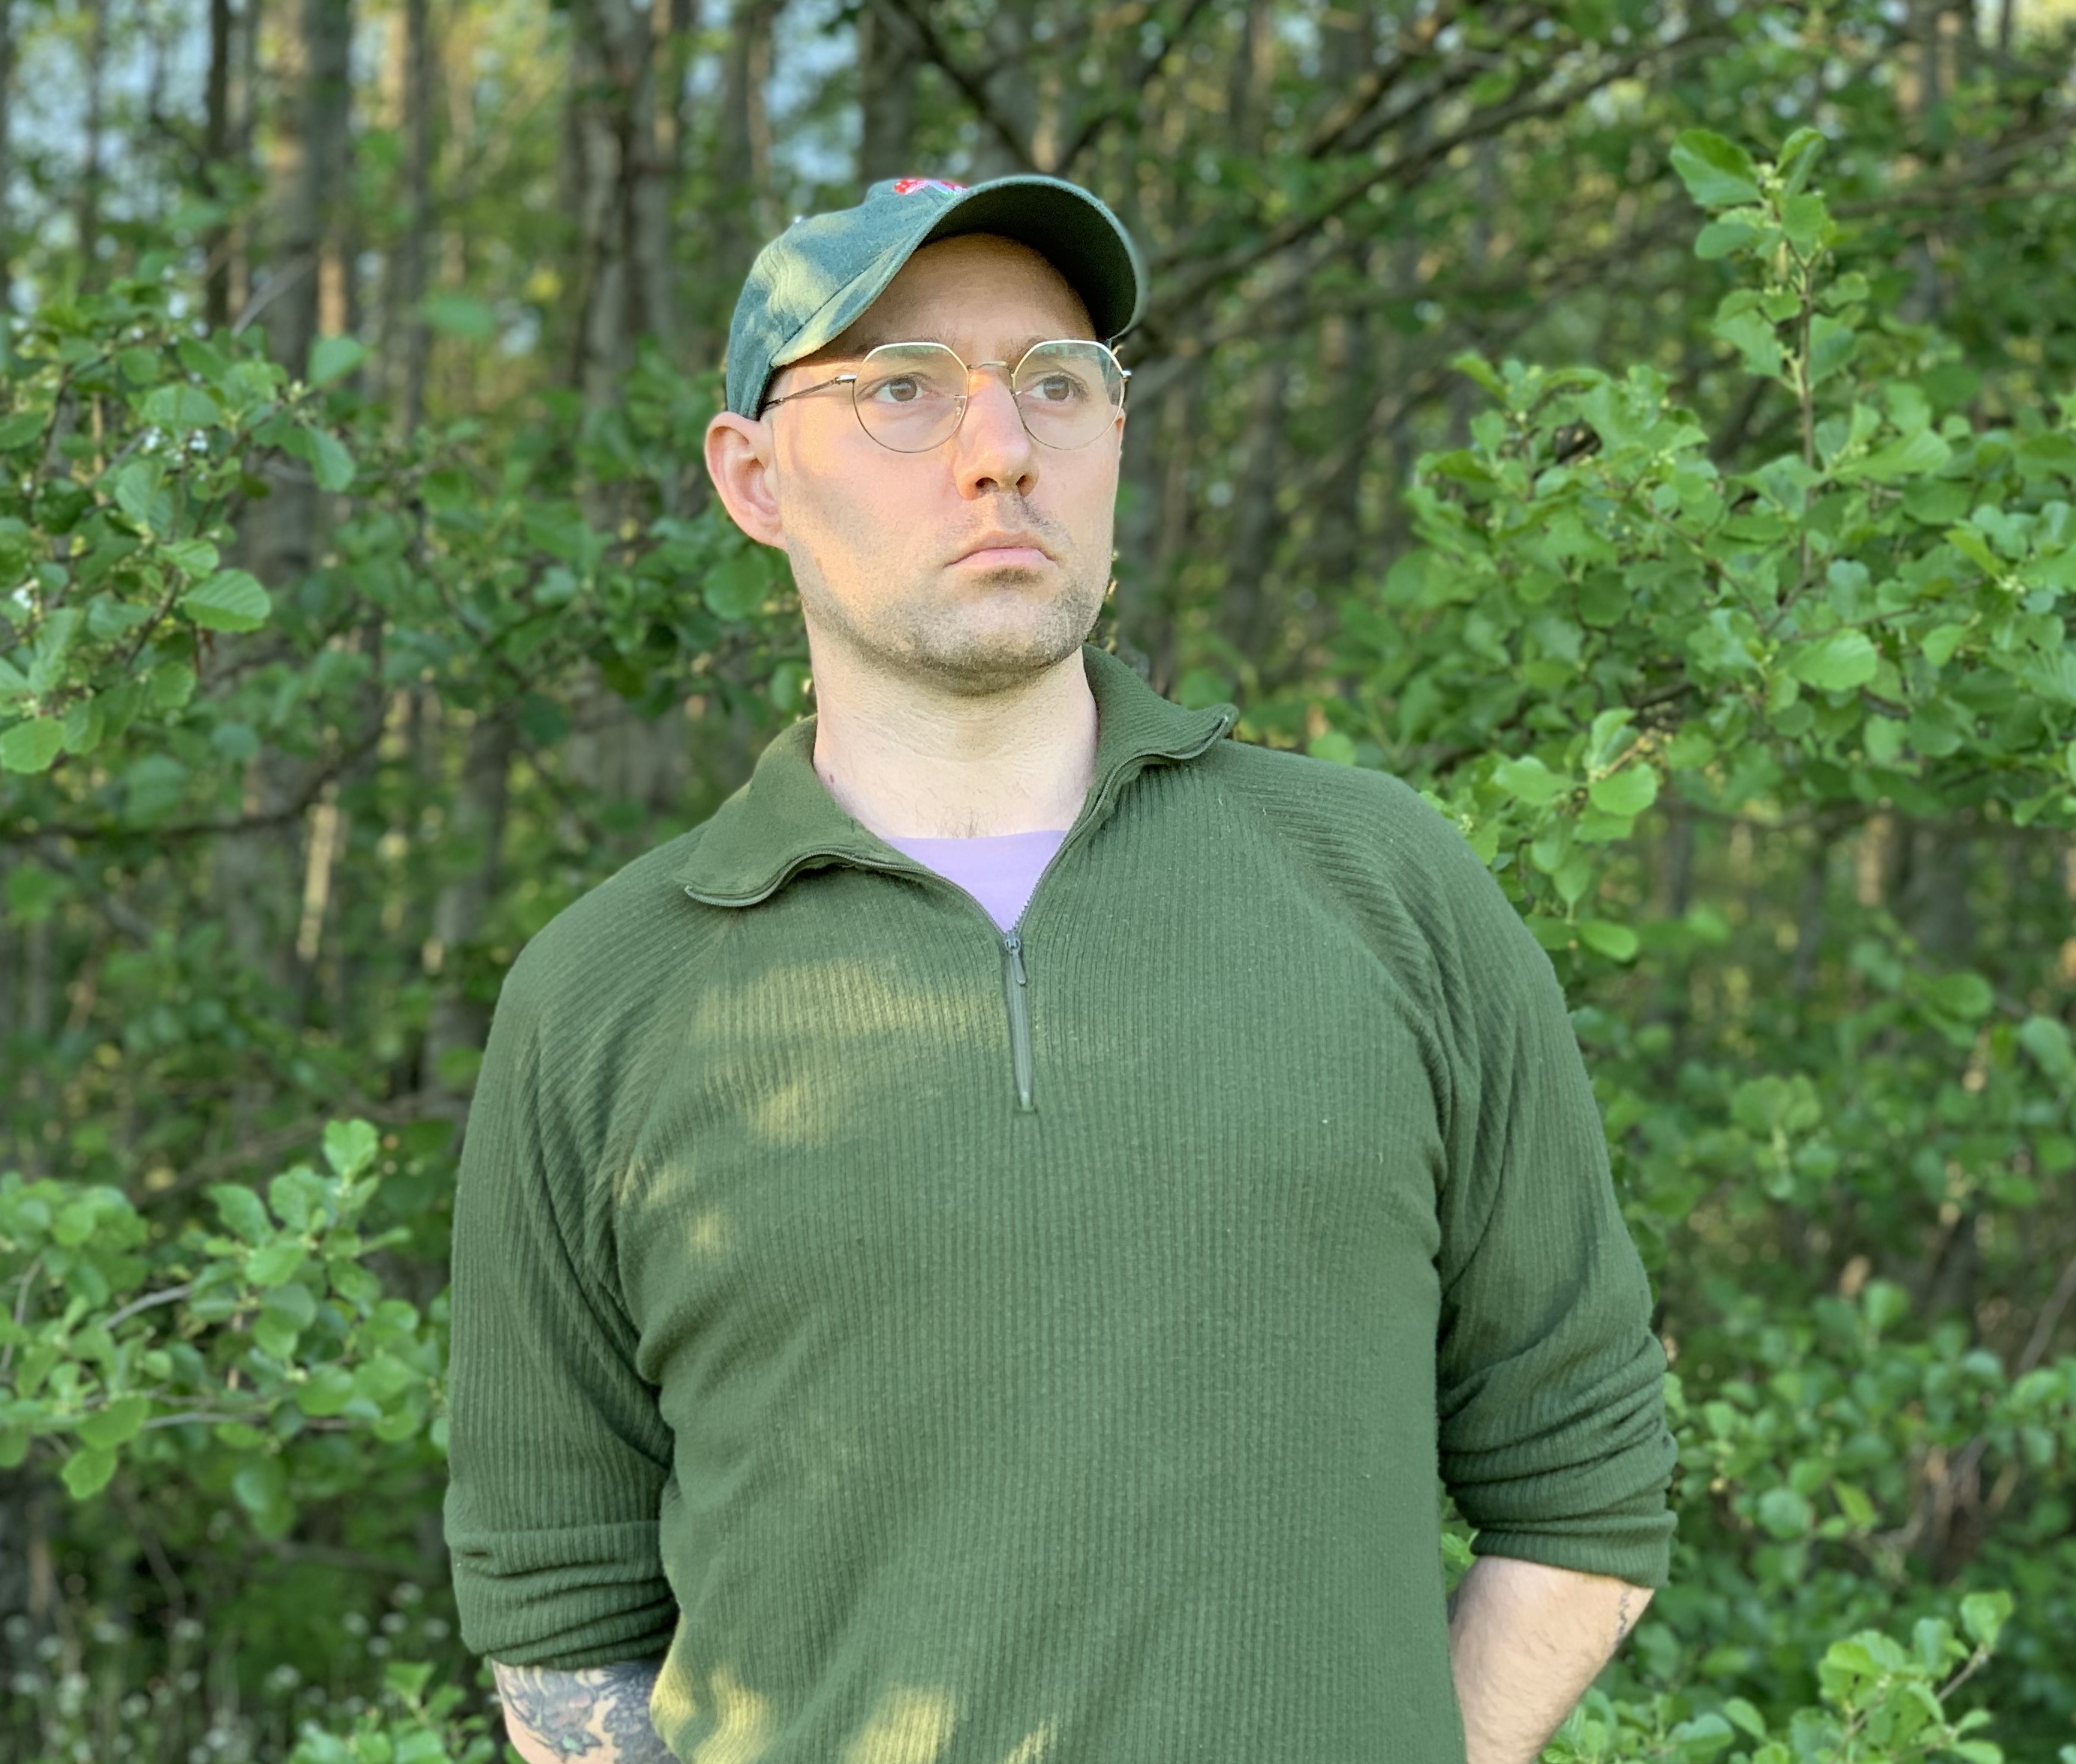 Porträtt på artisten SUNWALD. Han står i en skog framför gröna träd iförd en grön tröja och grön keps.